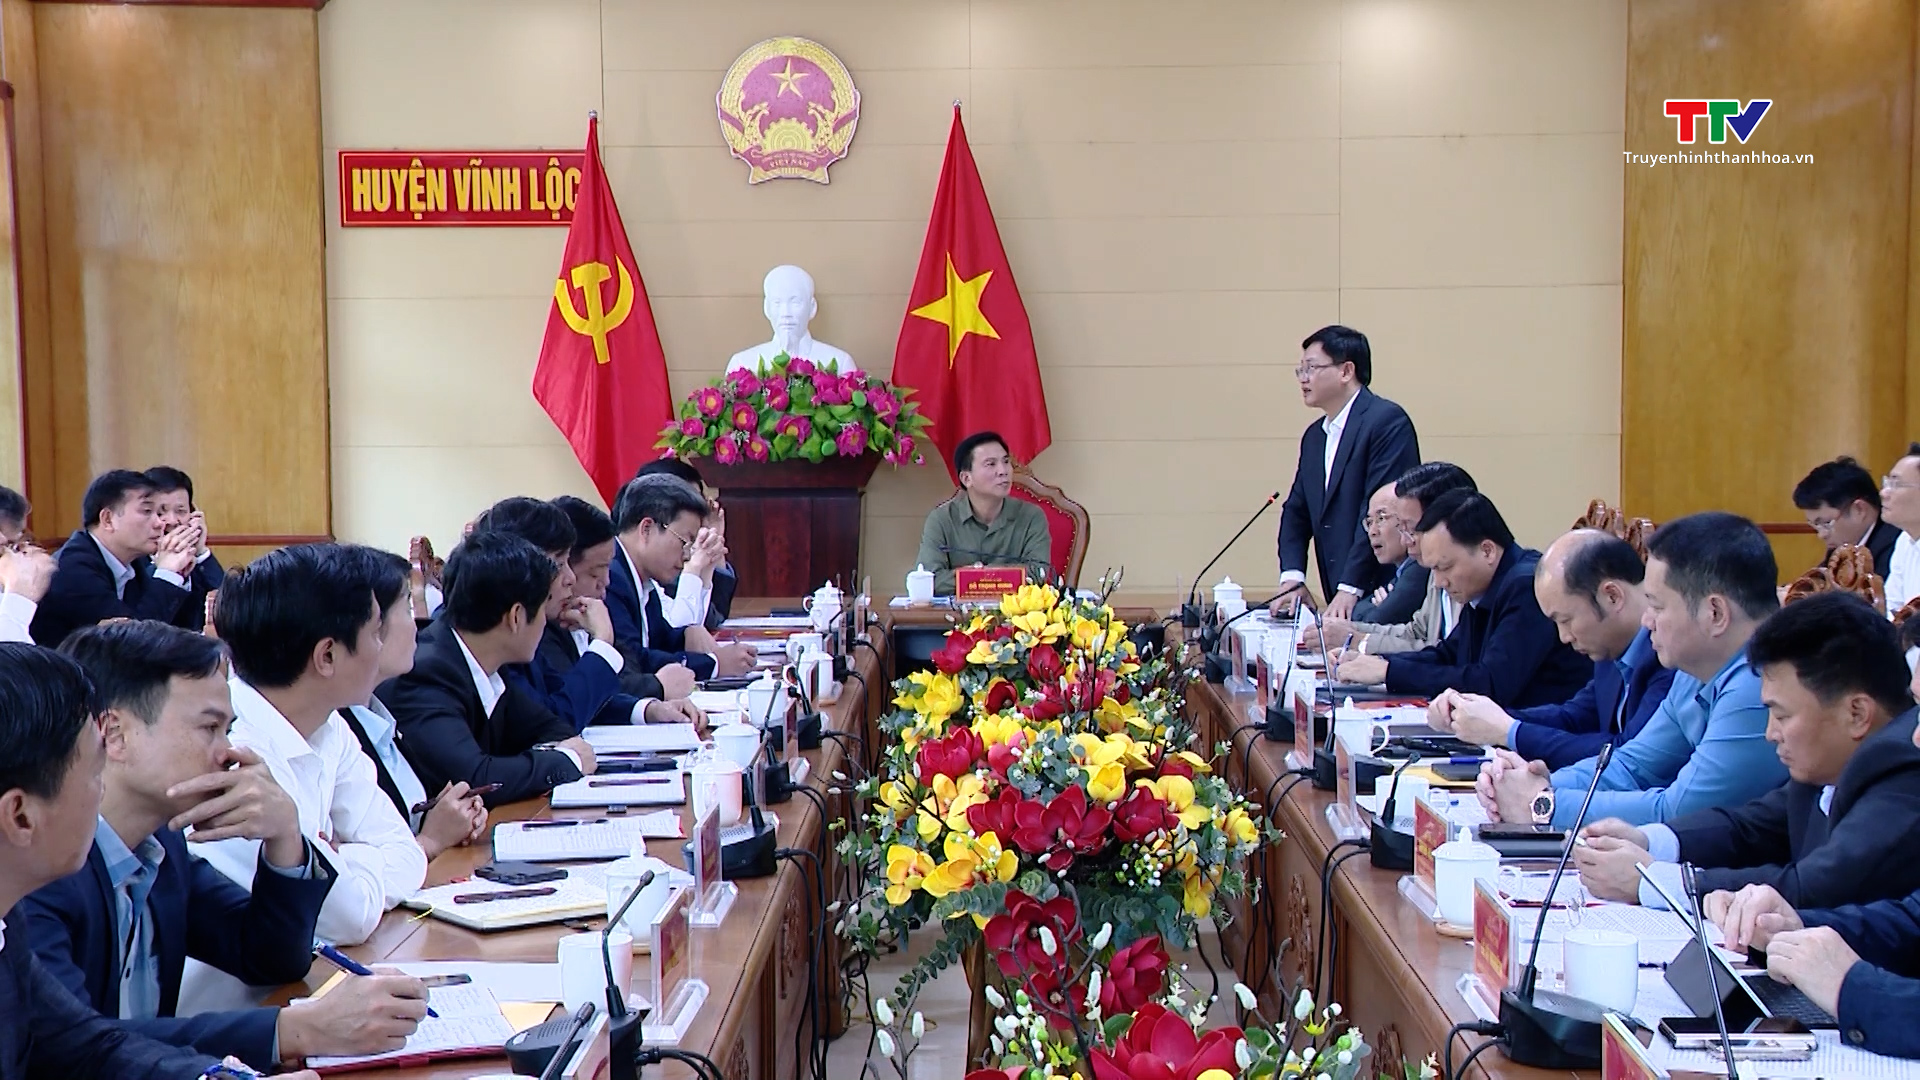 Tạo sự đột phá mạnh mẽ đưa Vĩnh Lộc trở thành huyện khá của tỉnh vào năm 2025- Ảnh 5.